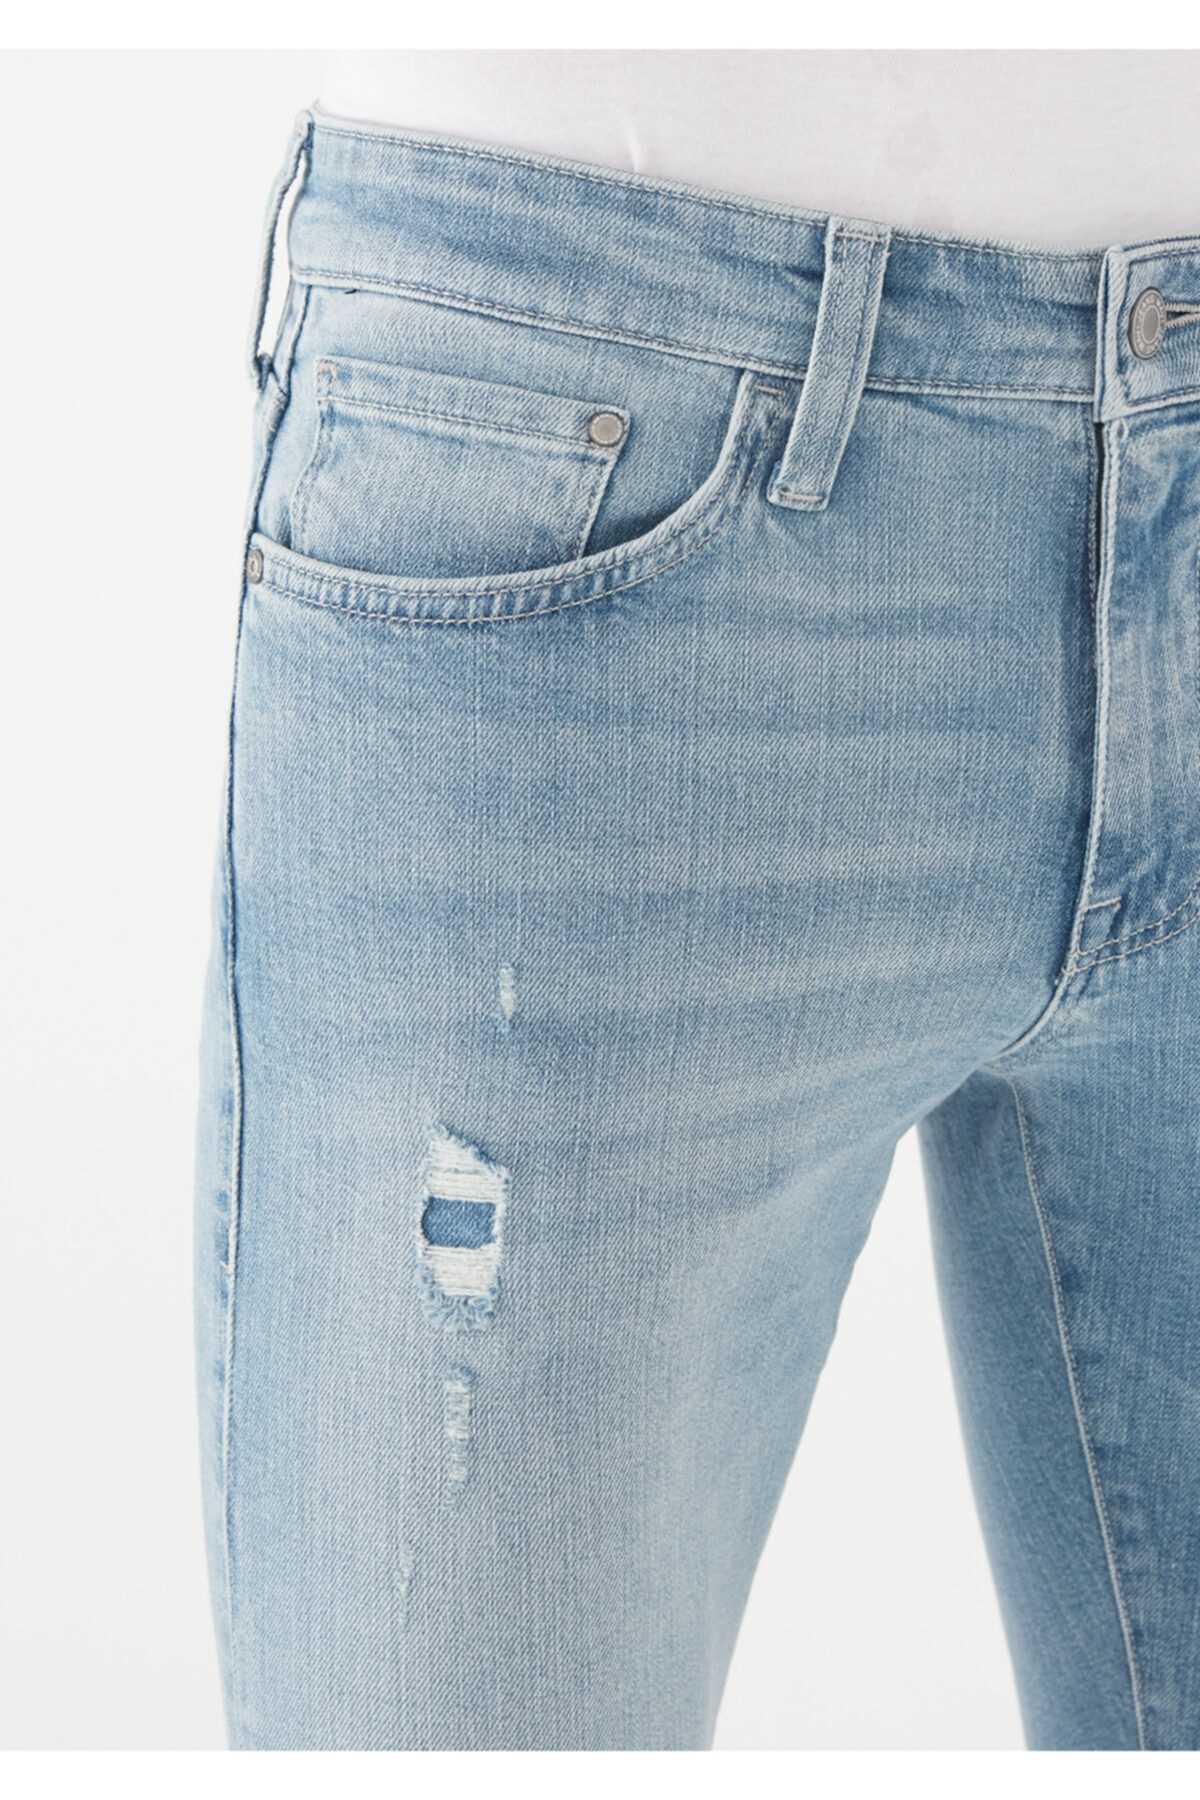 خرید نقدی شلوار جین مردانه فروشگاه اینترنتی برند ماوی رنگ آبی کد ty111216210